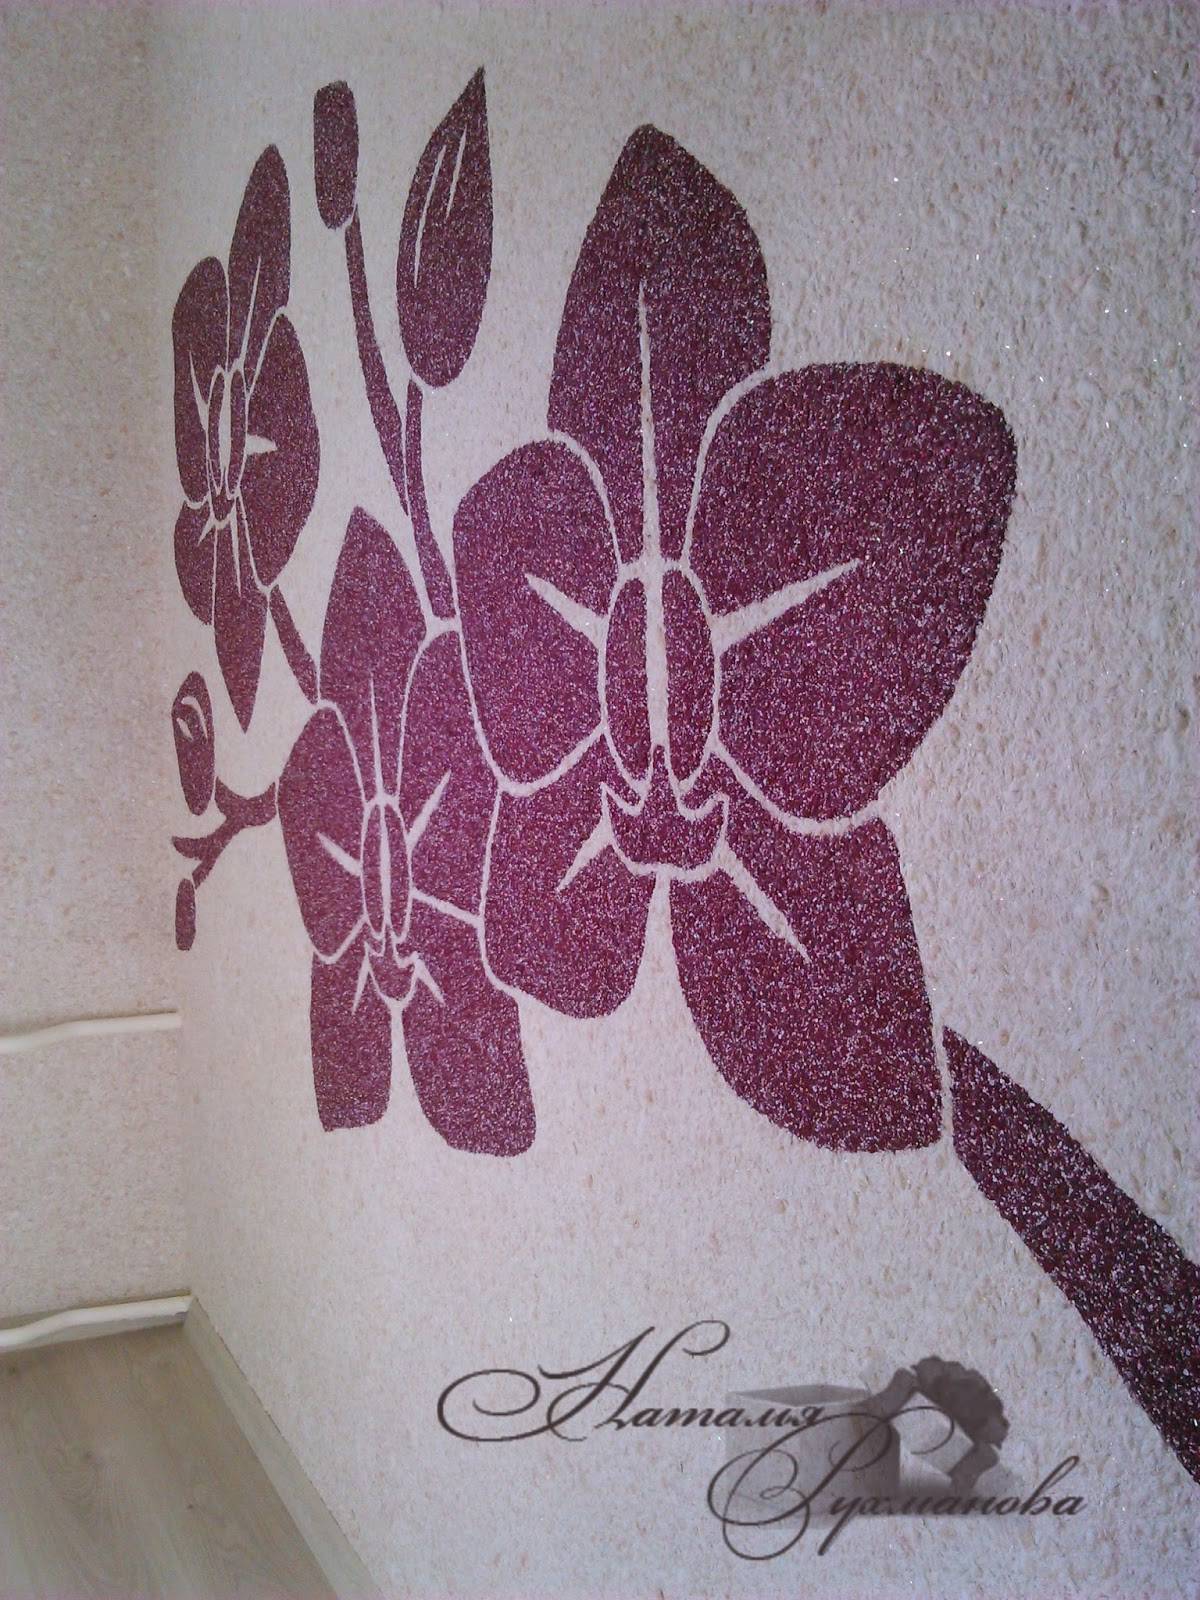 Рисунок жидкими обоями на стене: как красиво и креативно оформить стены и нанести нестандартный объемный рисунок в спальне, коридоре или ванной